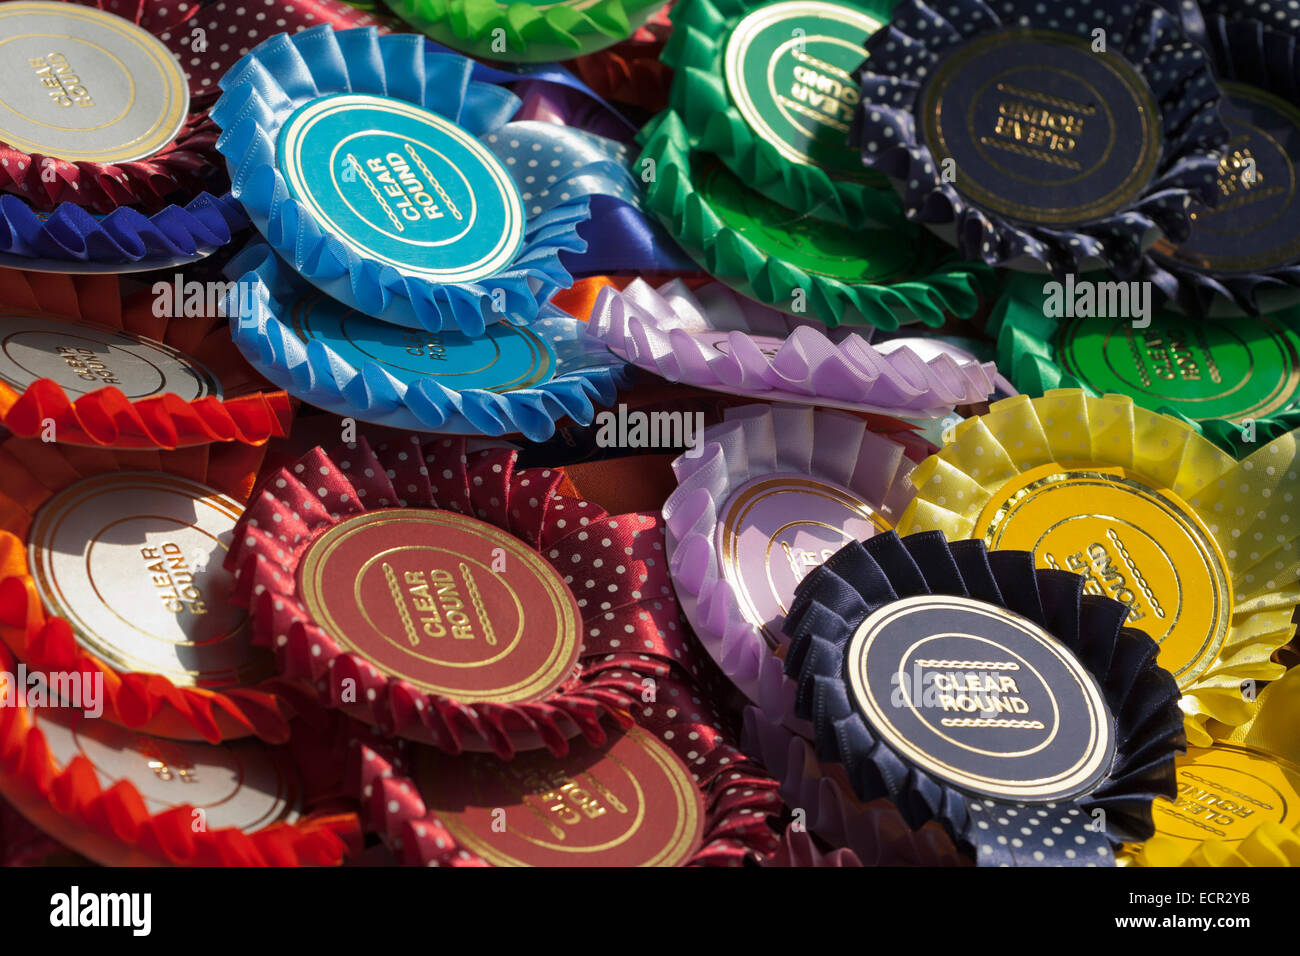 Rosettes prêt à être présenté à un poney / cheval cas au Royaume-Uni Banque D'Images